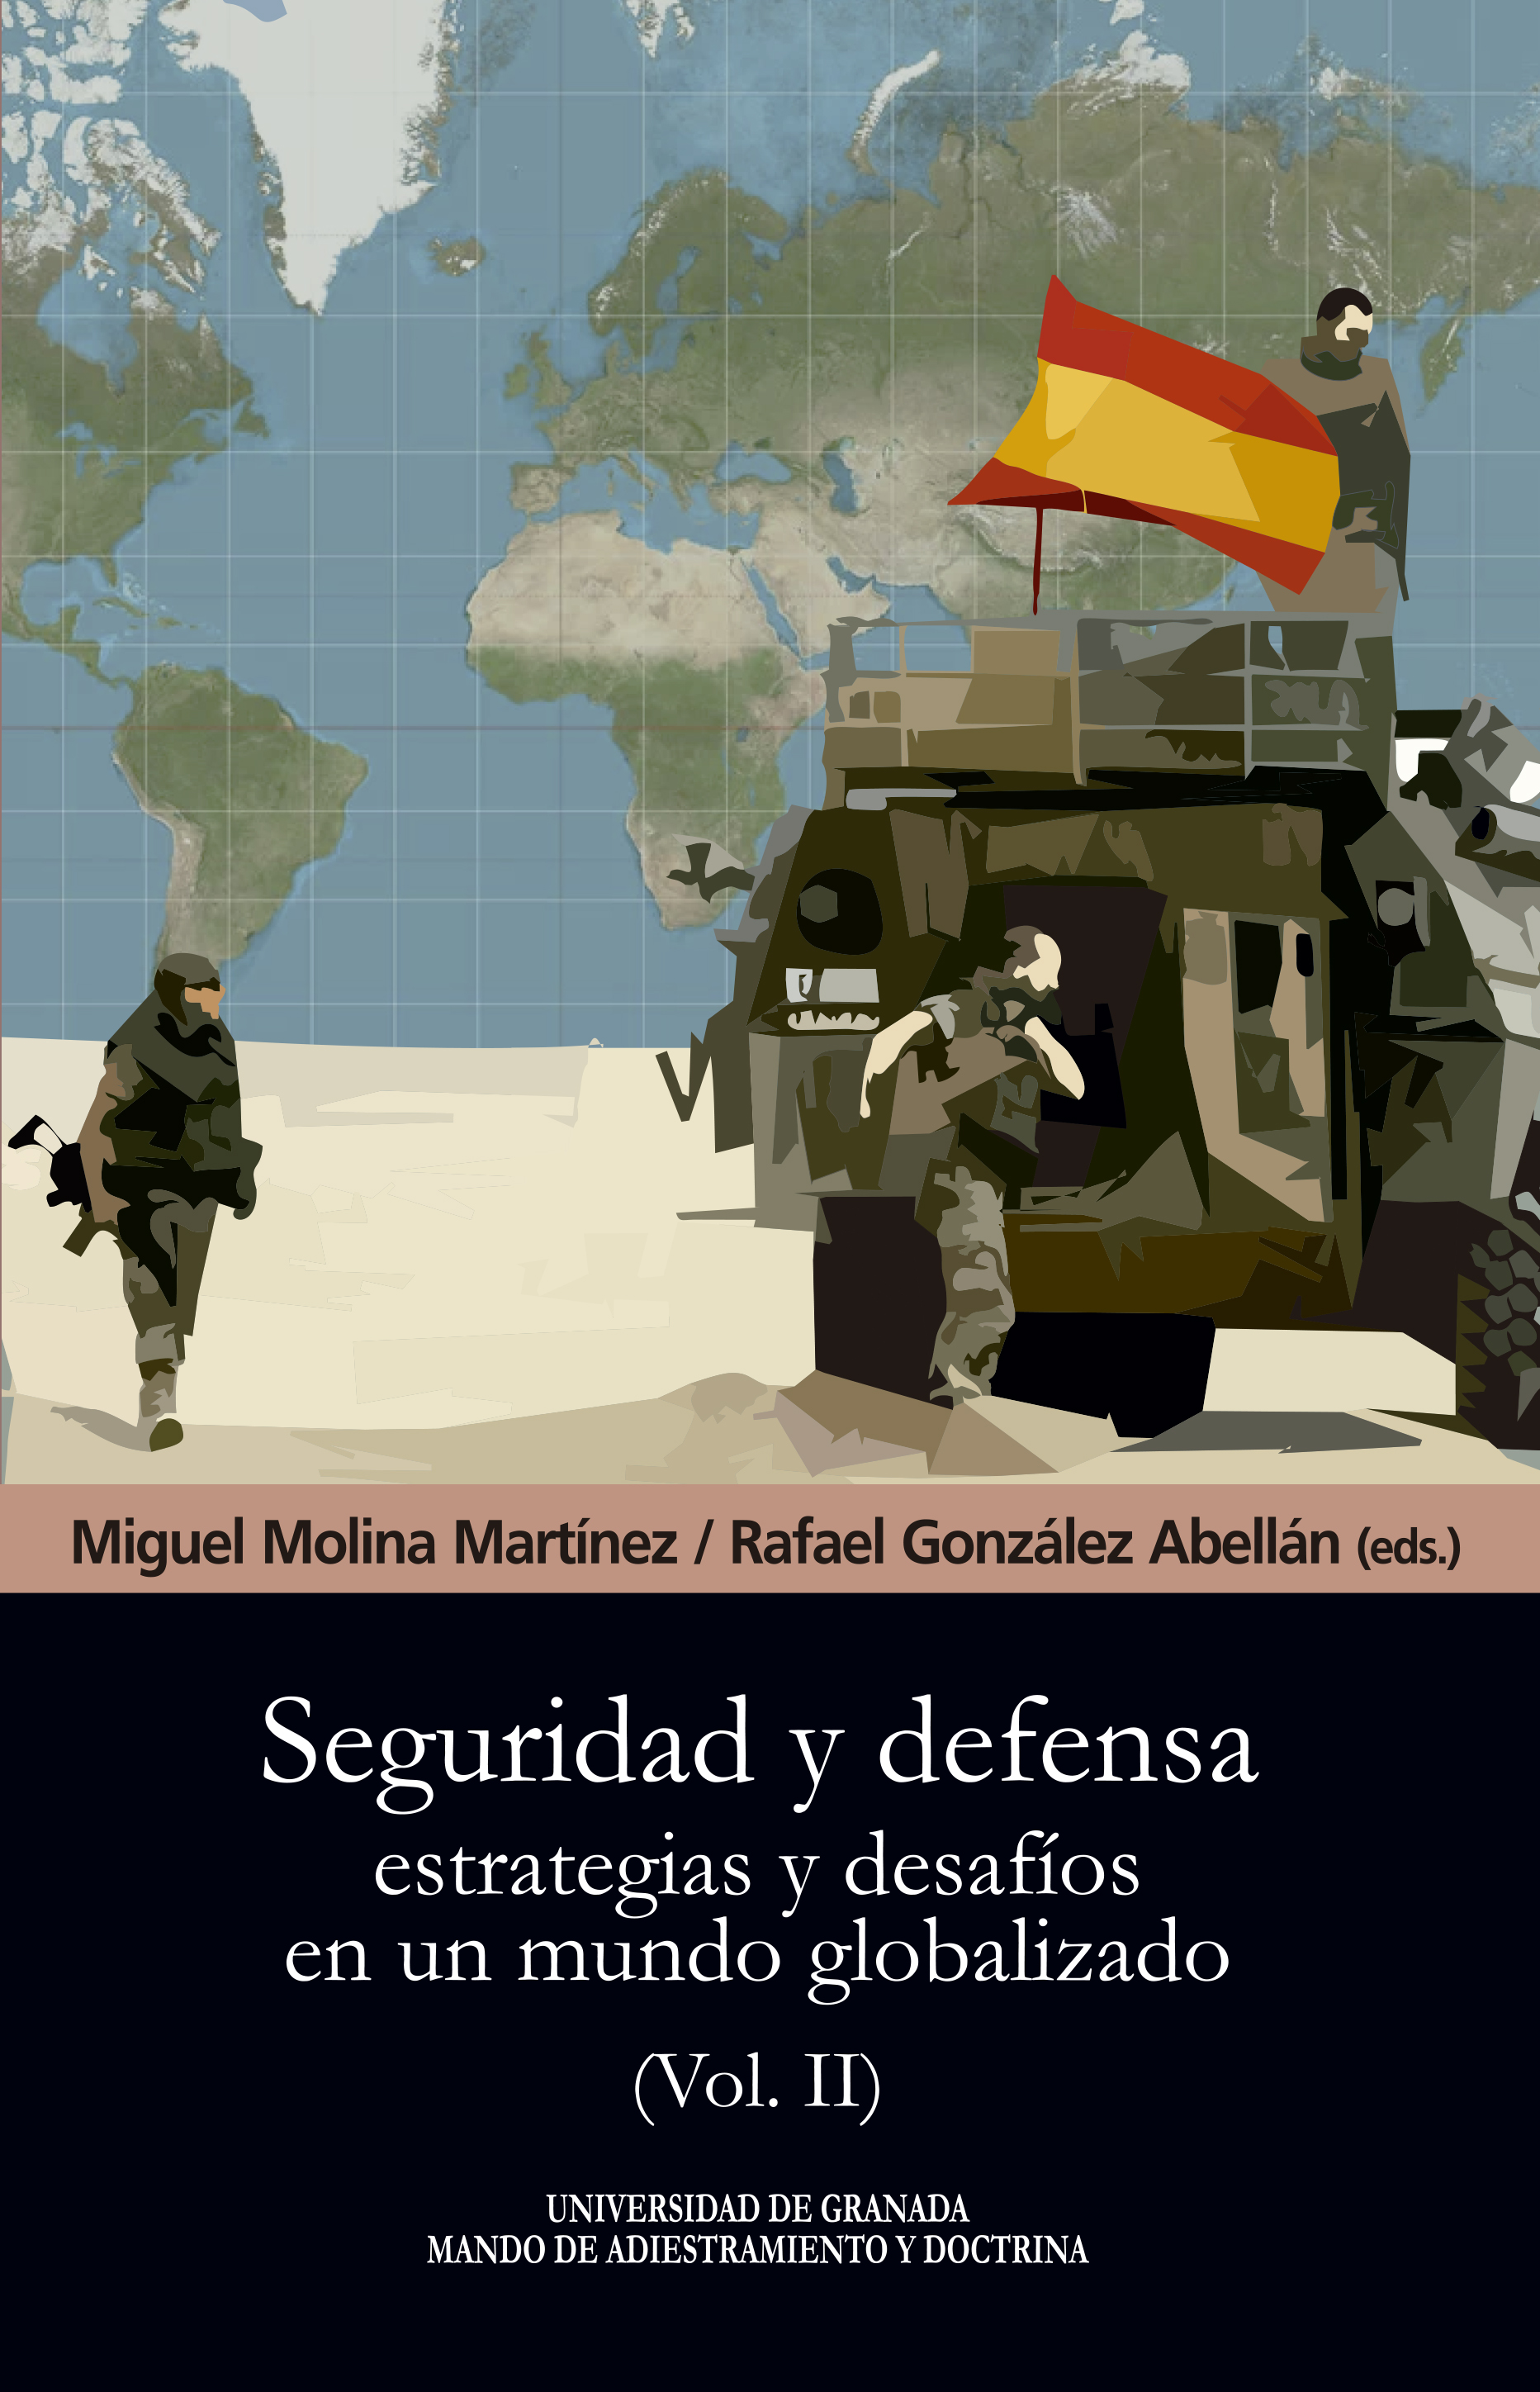 Seguridad y defensa   «Estrategias y desafíos en un mundo globalizado»